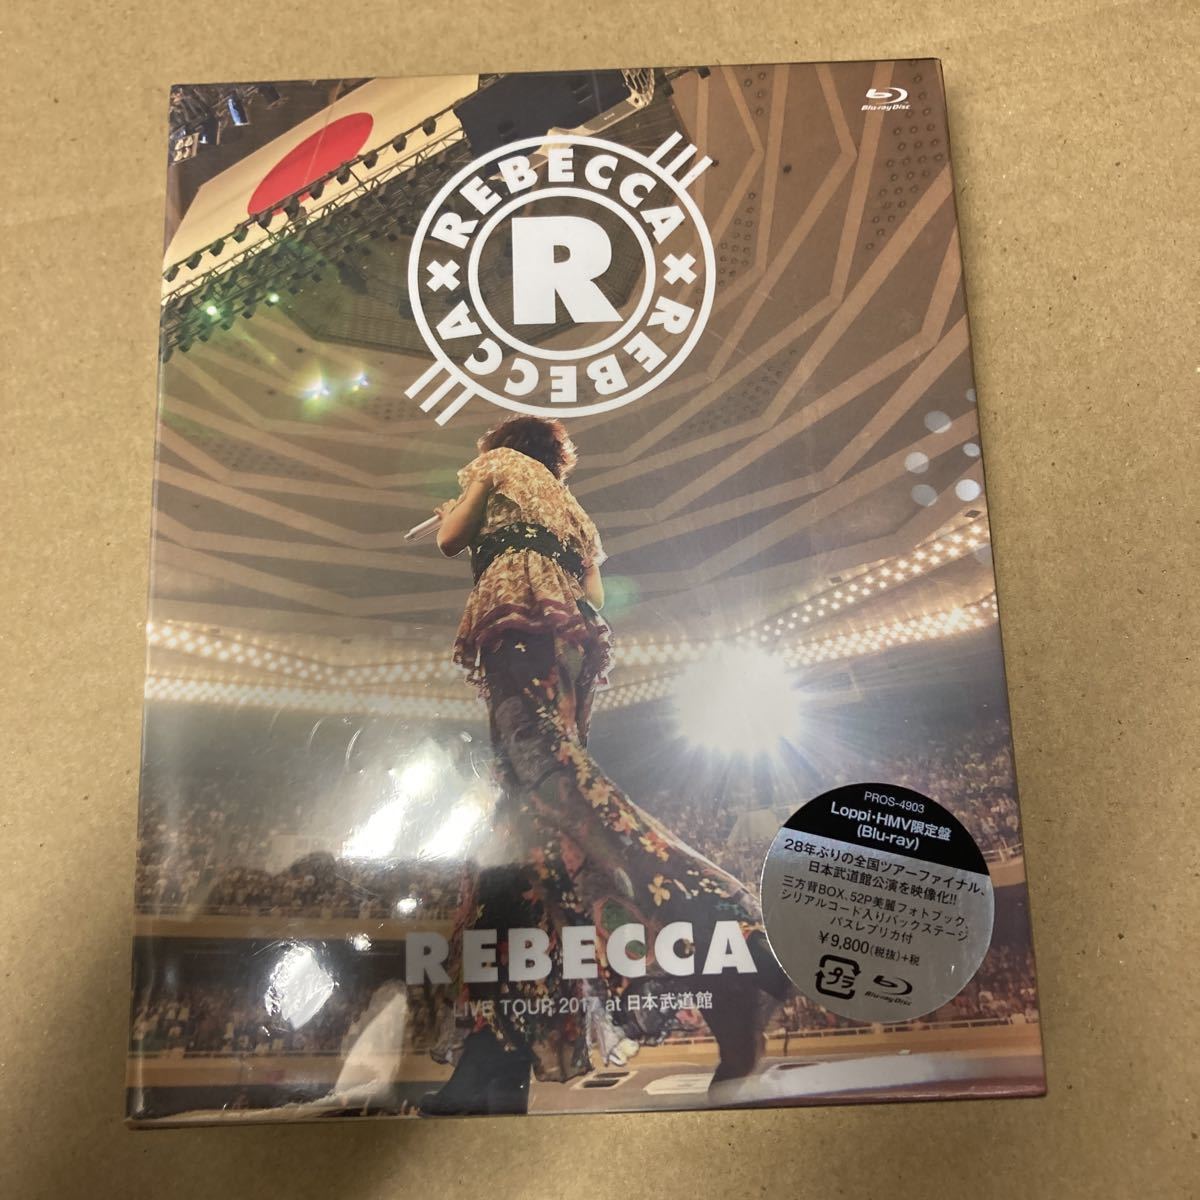 即決 LoppiHMV限定盤 REBECCA LIVE TOUR 2017 at日本武道館 (Blu-ray